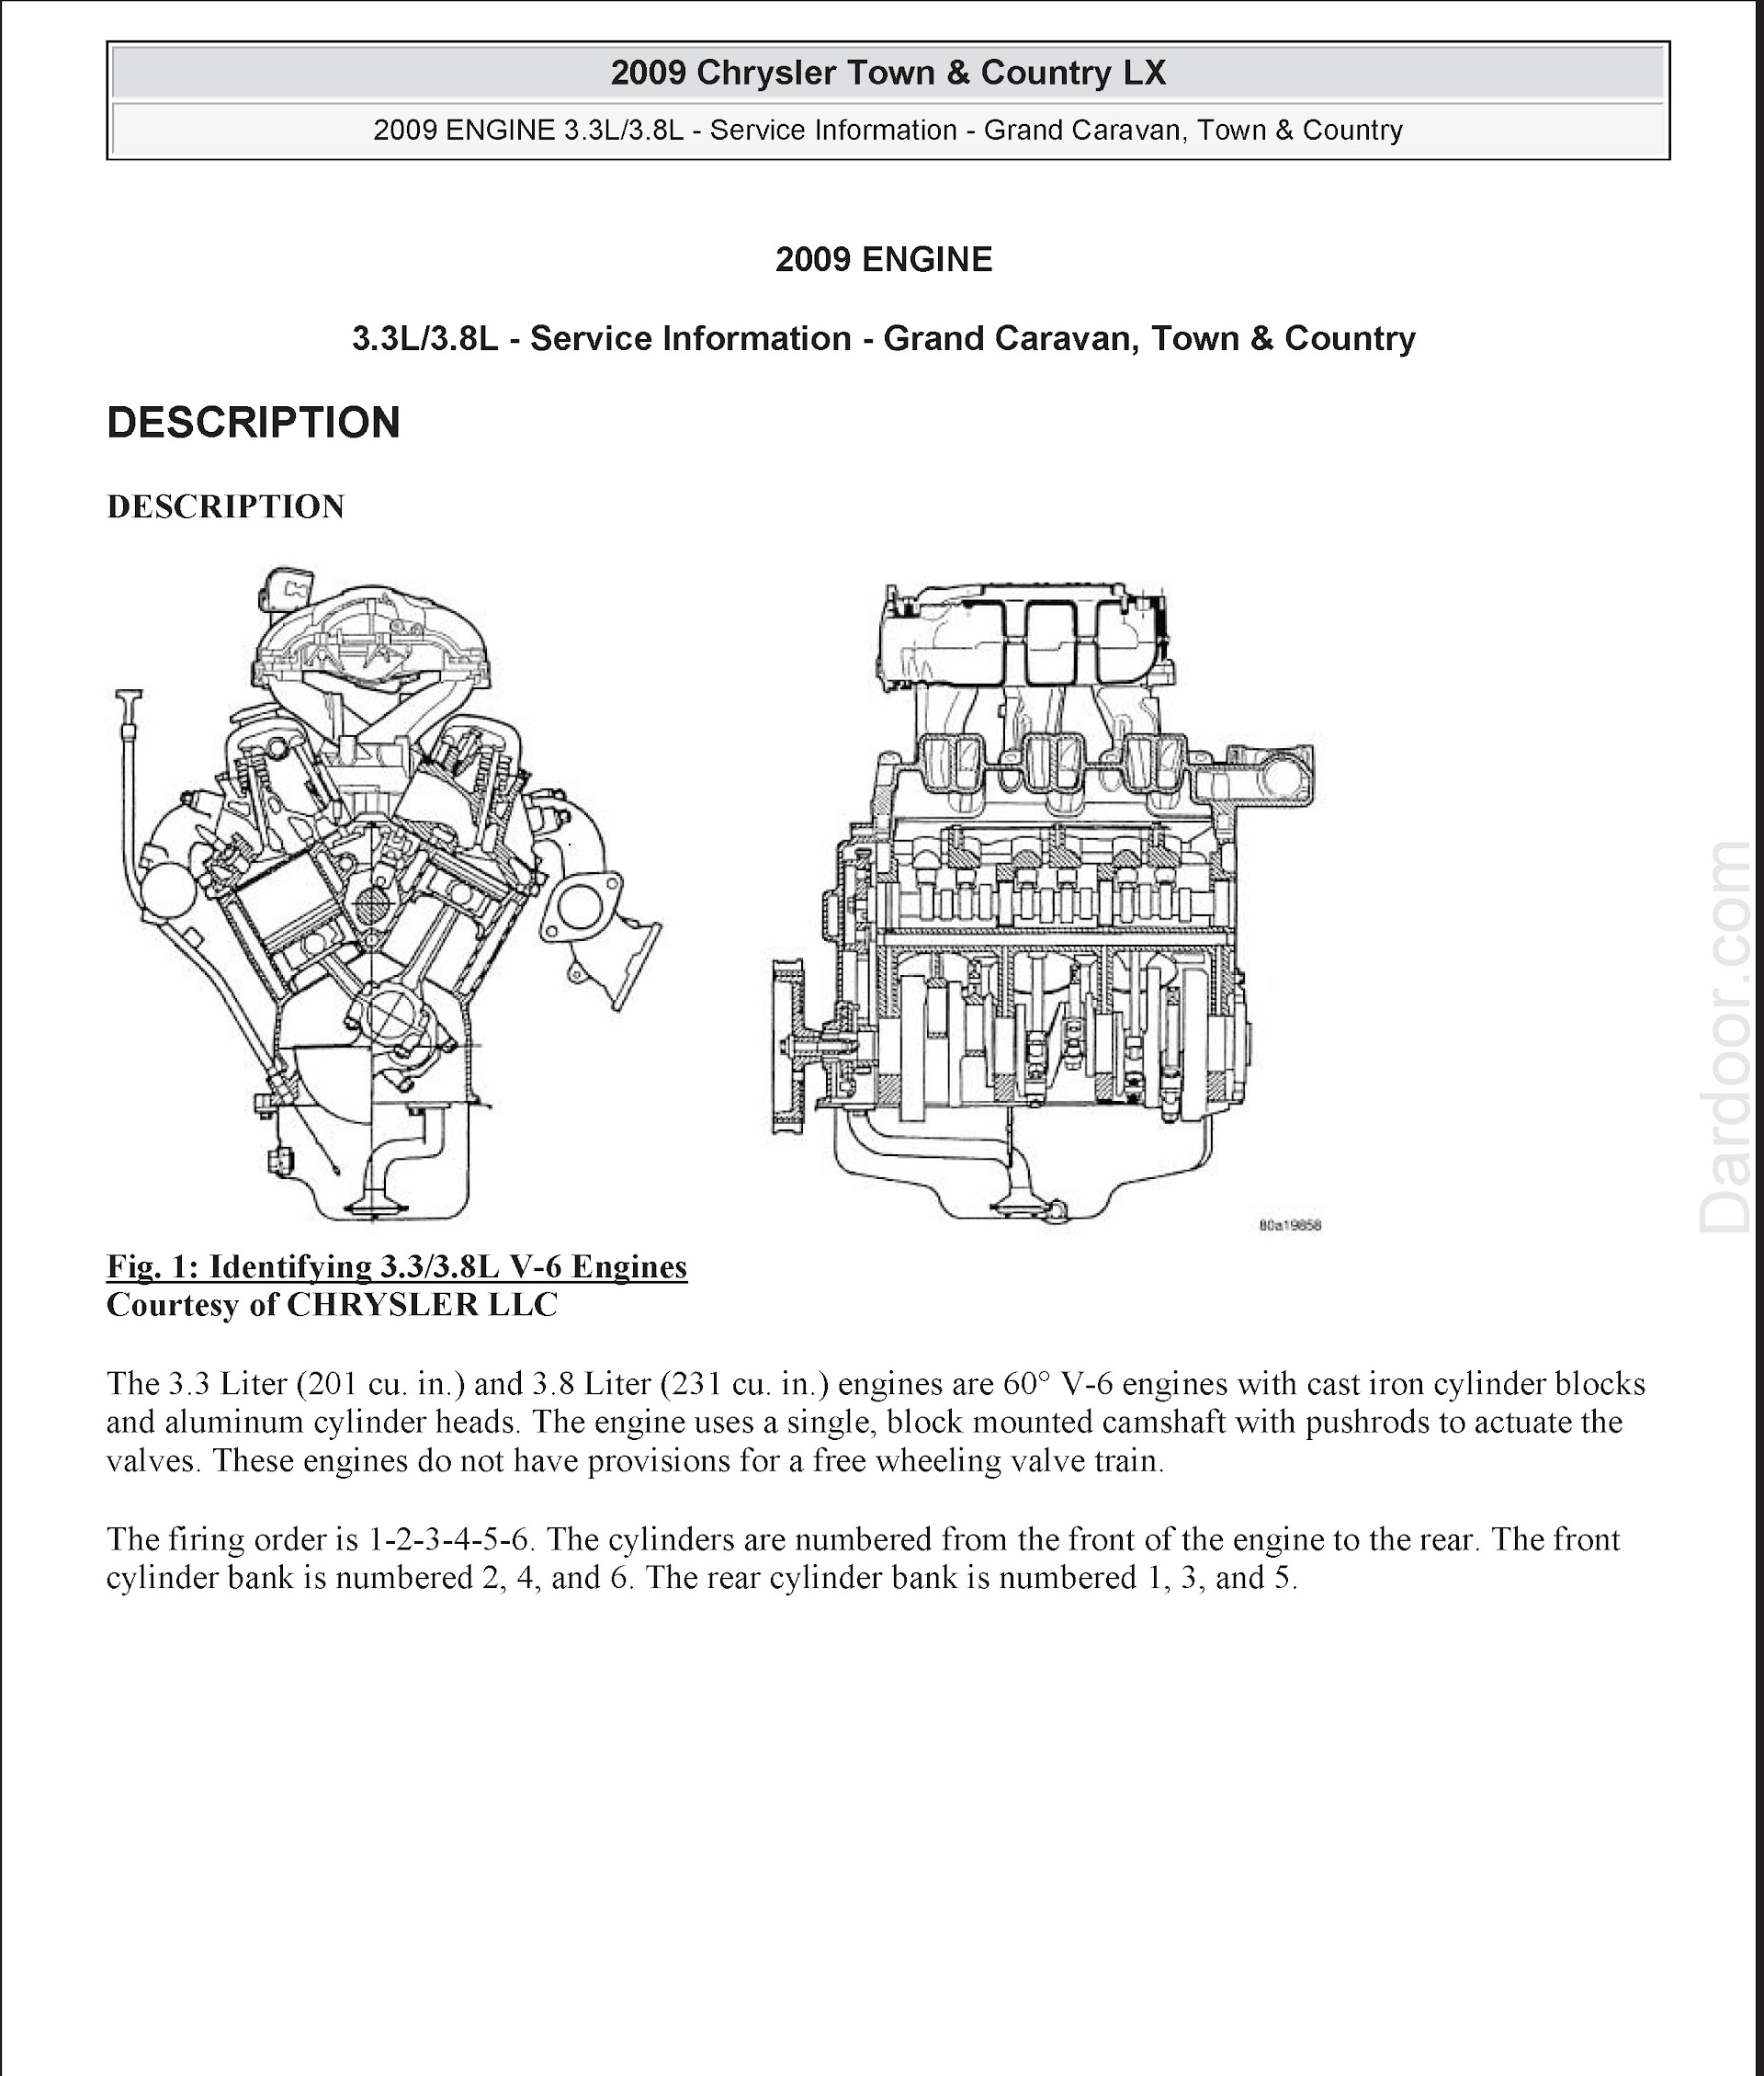 2008-2009 Chrysler Town & Country LX repair manual